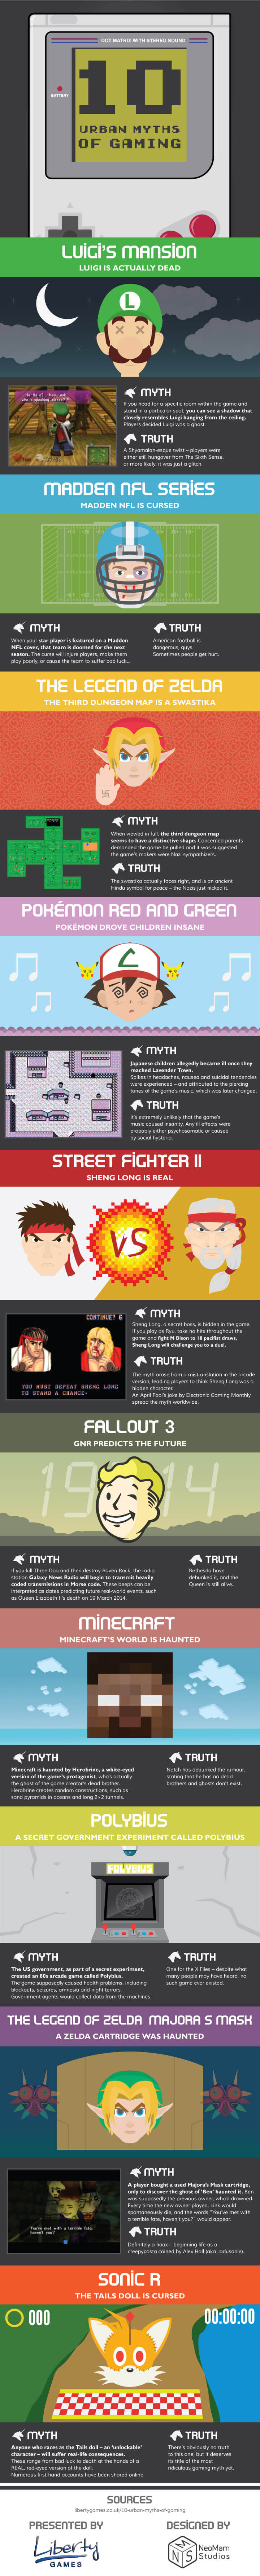 10 Urban Myths Of Gaming